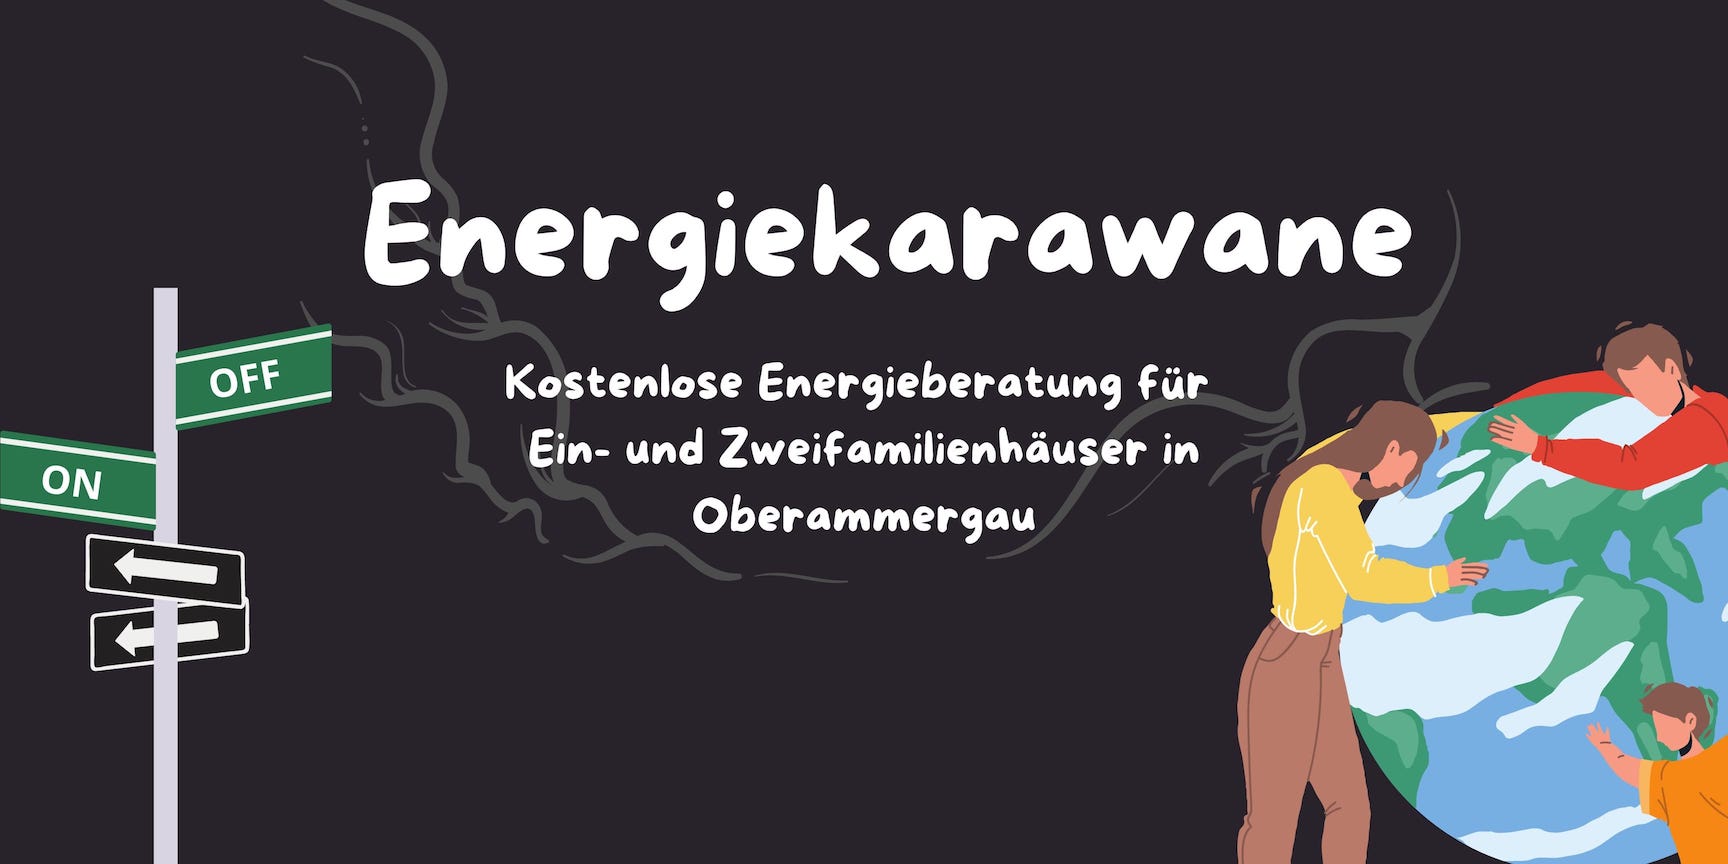 Energiekarawane - Kostenlose Energieberatung für Ein- und Zweifamilienhäuser in Oberammergau